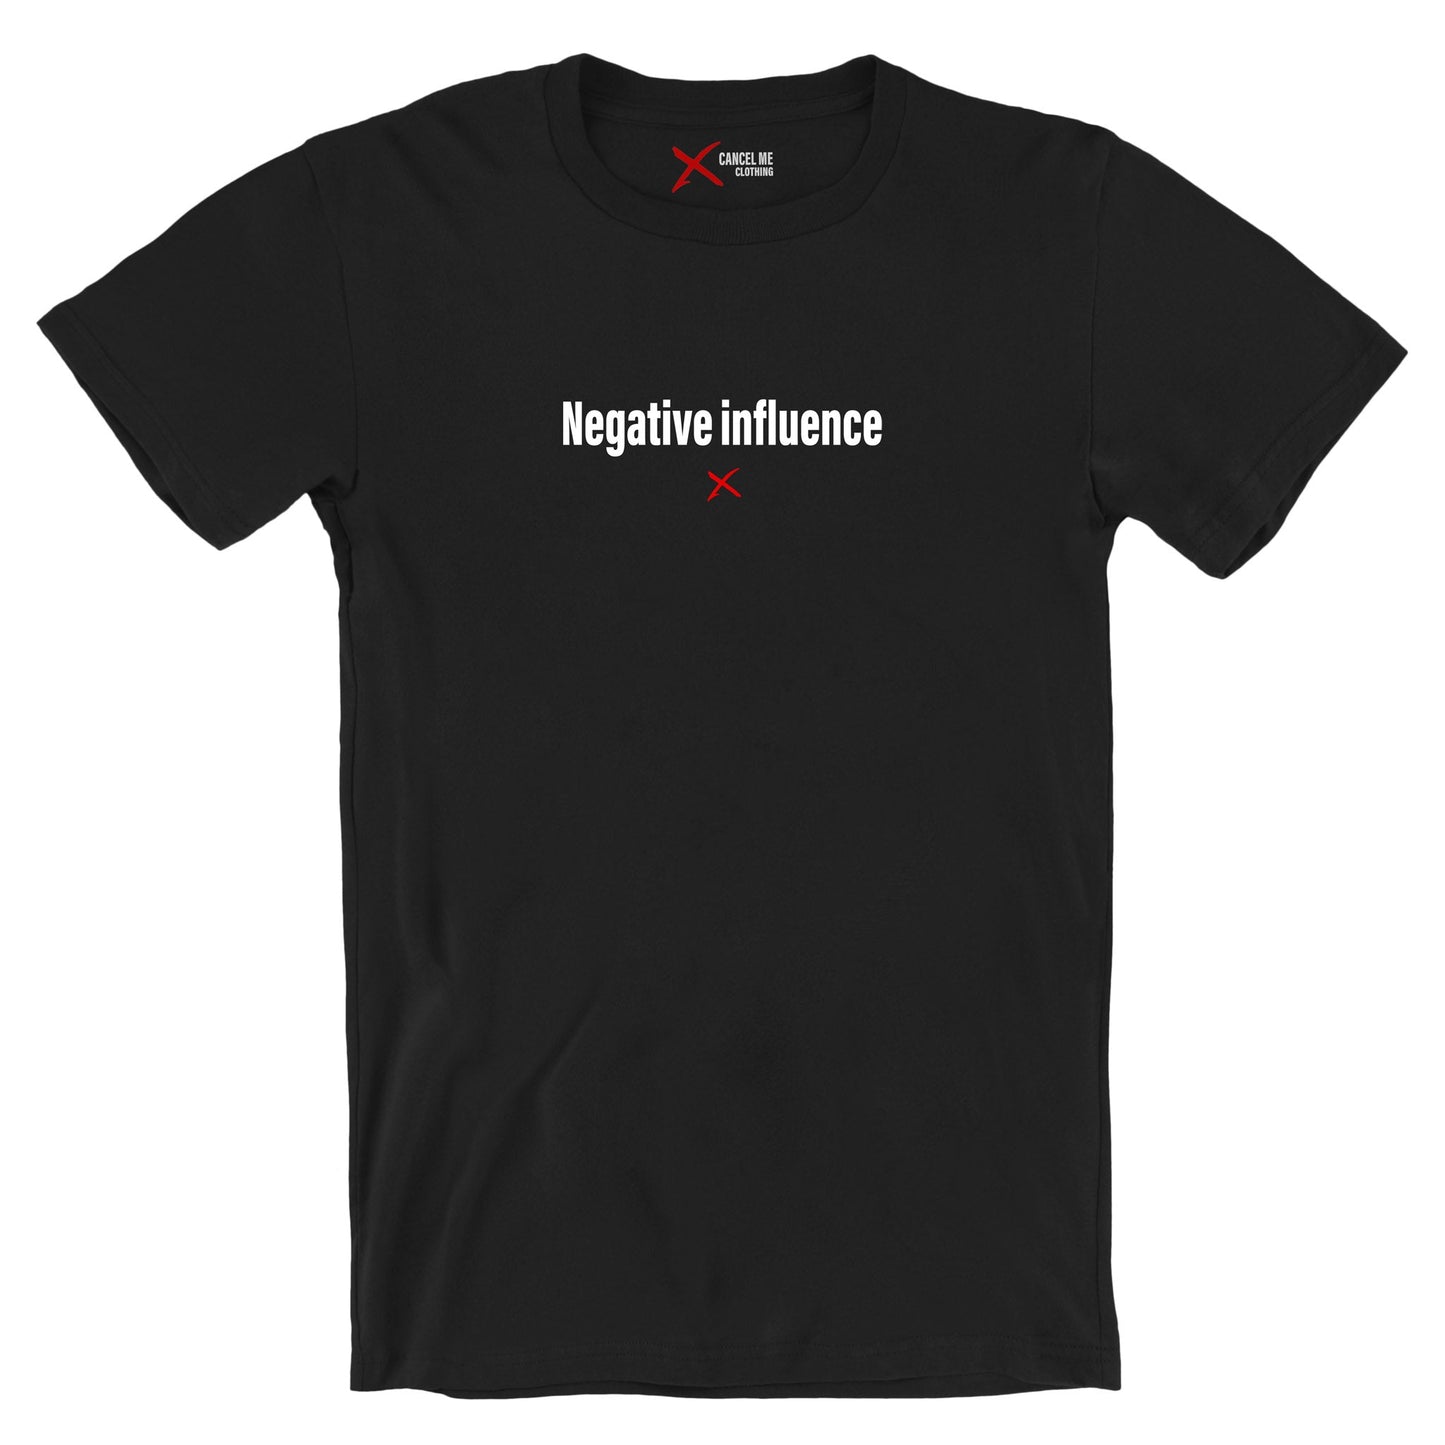 Negative influence - Shirt